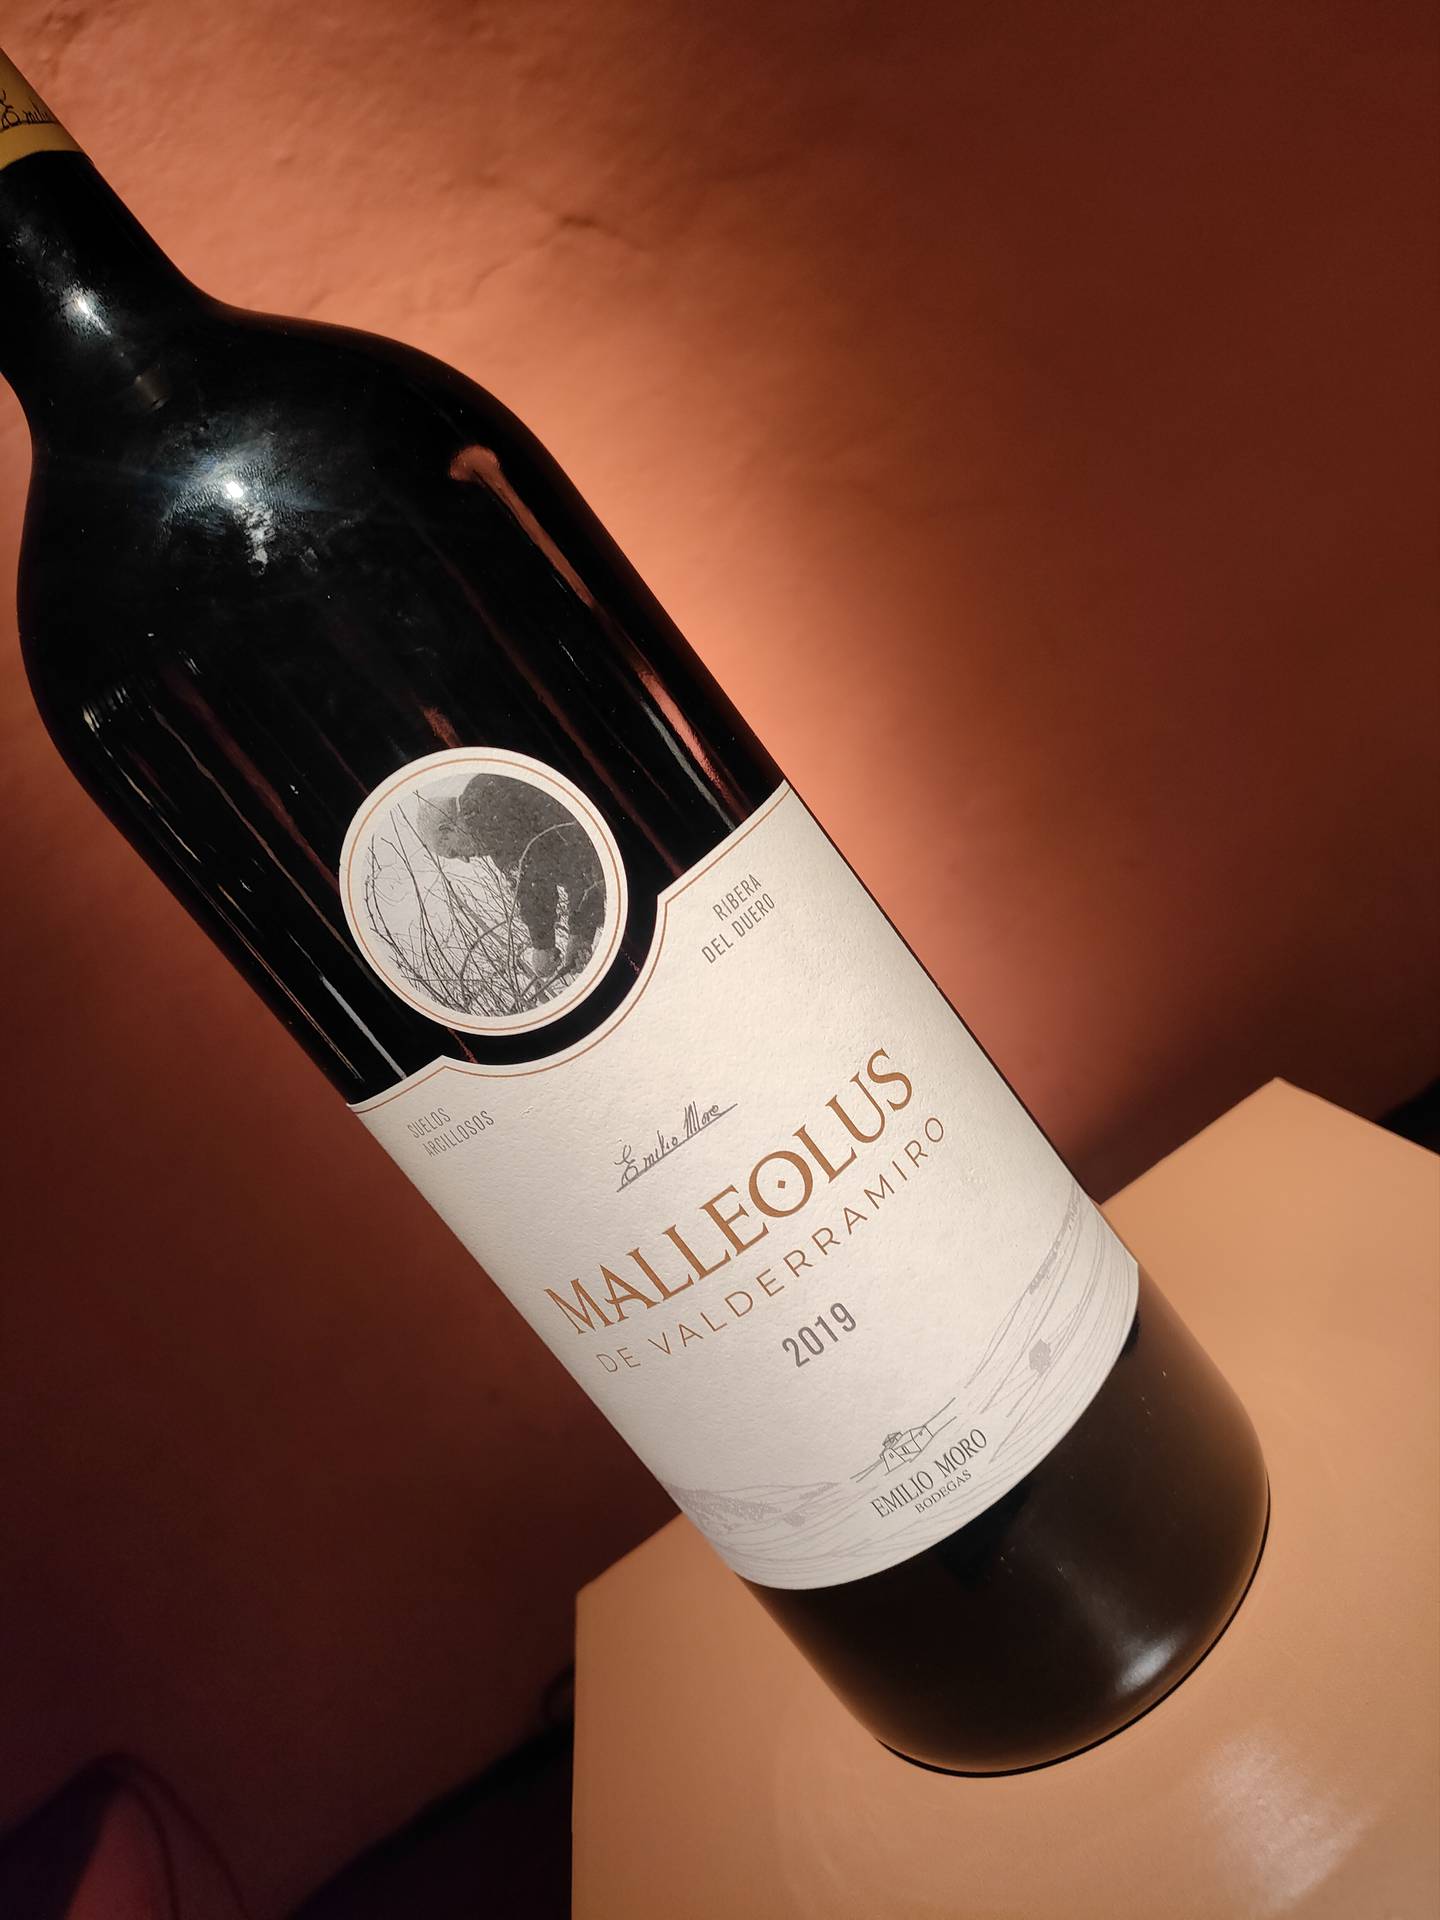 La Familia Malleolus presenta tres etiquetas de gran potencia y estructura que seducirán el paladar de los amantes del vino